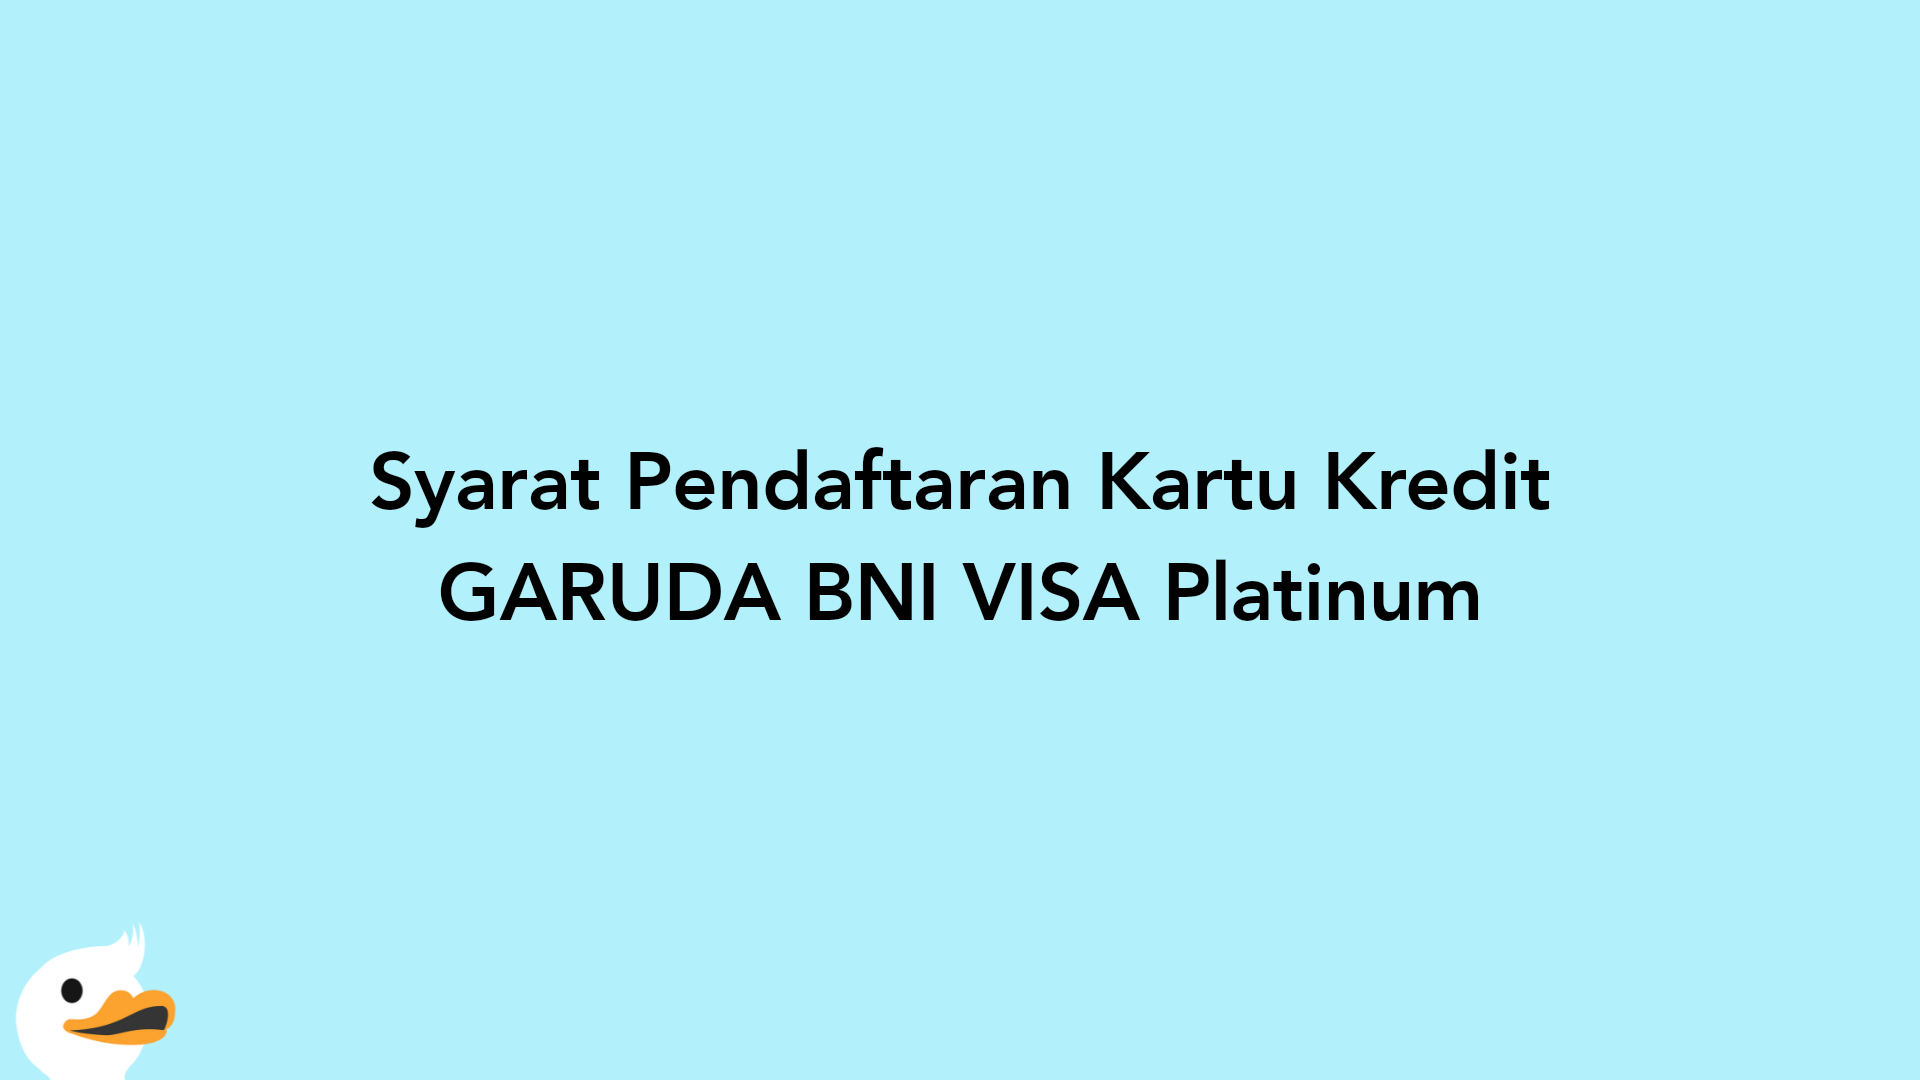 Syarat Pendaftaran Kartu Kredit GARUDA BNI VISA Platinum